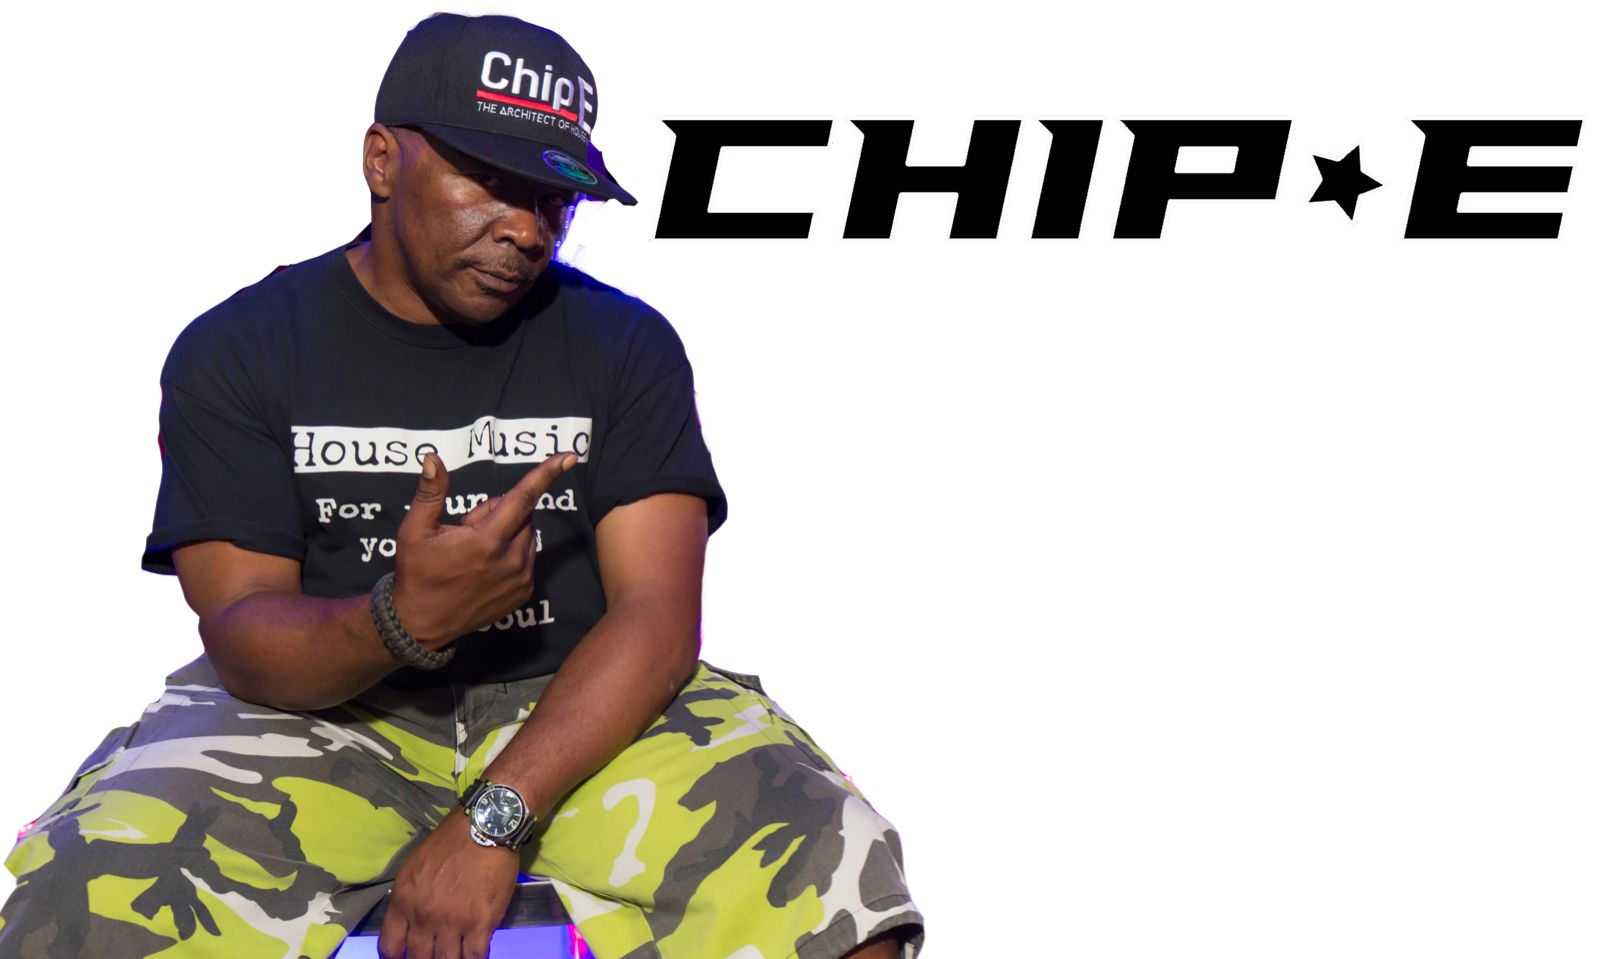 Miles Long's EDM Label Announces Chip E. Appearances